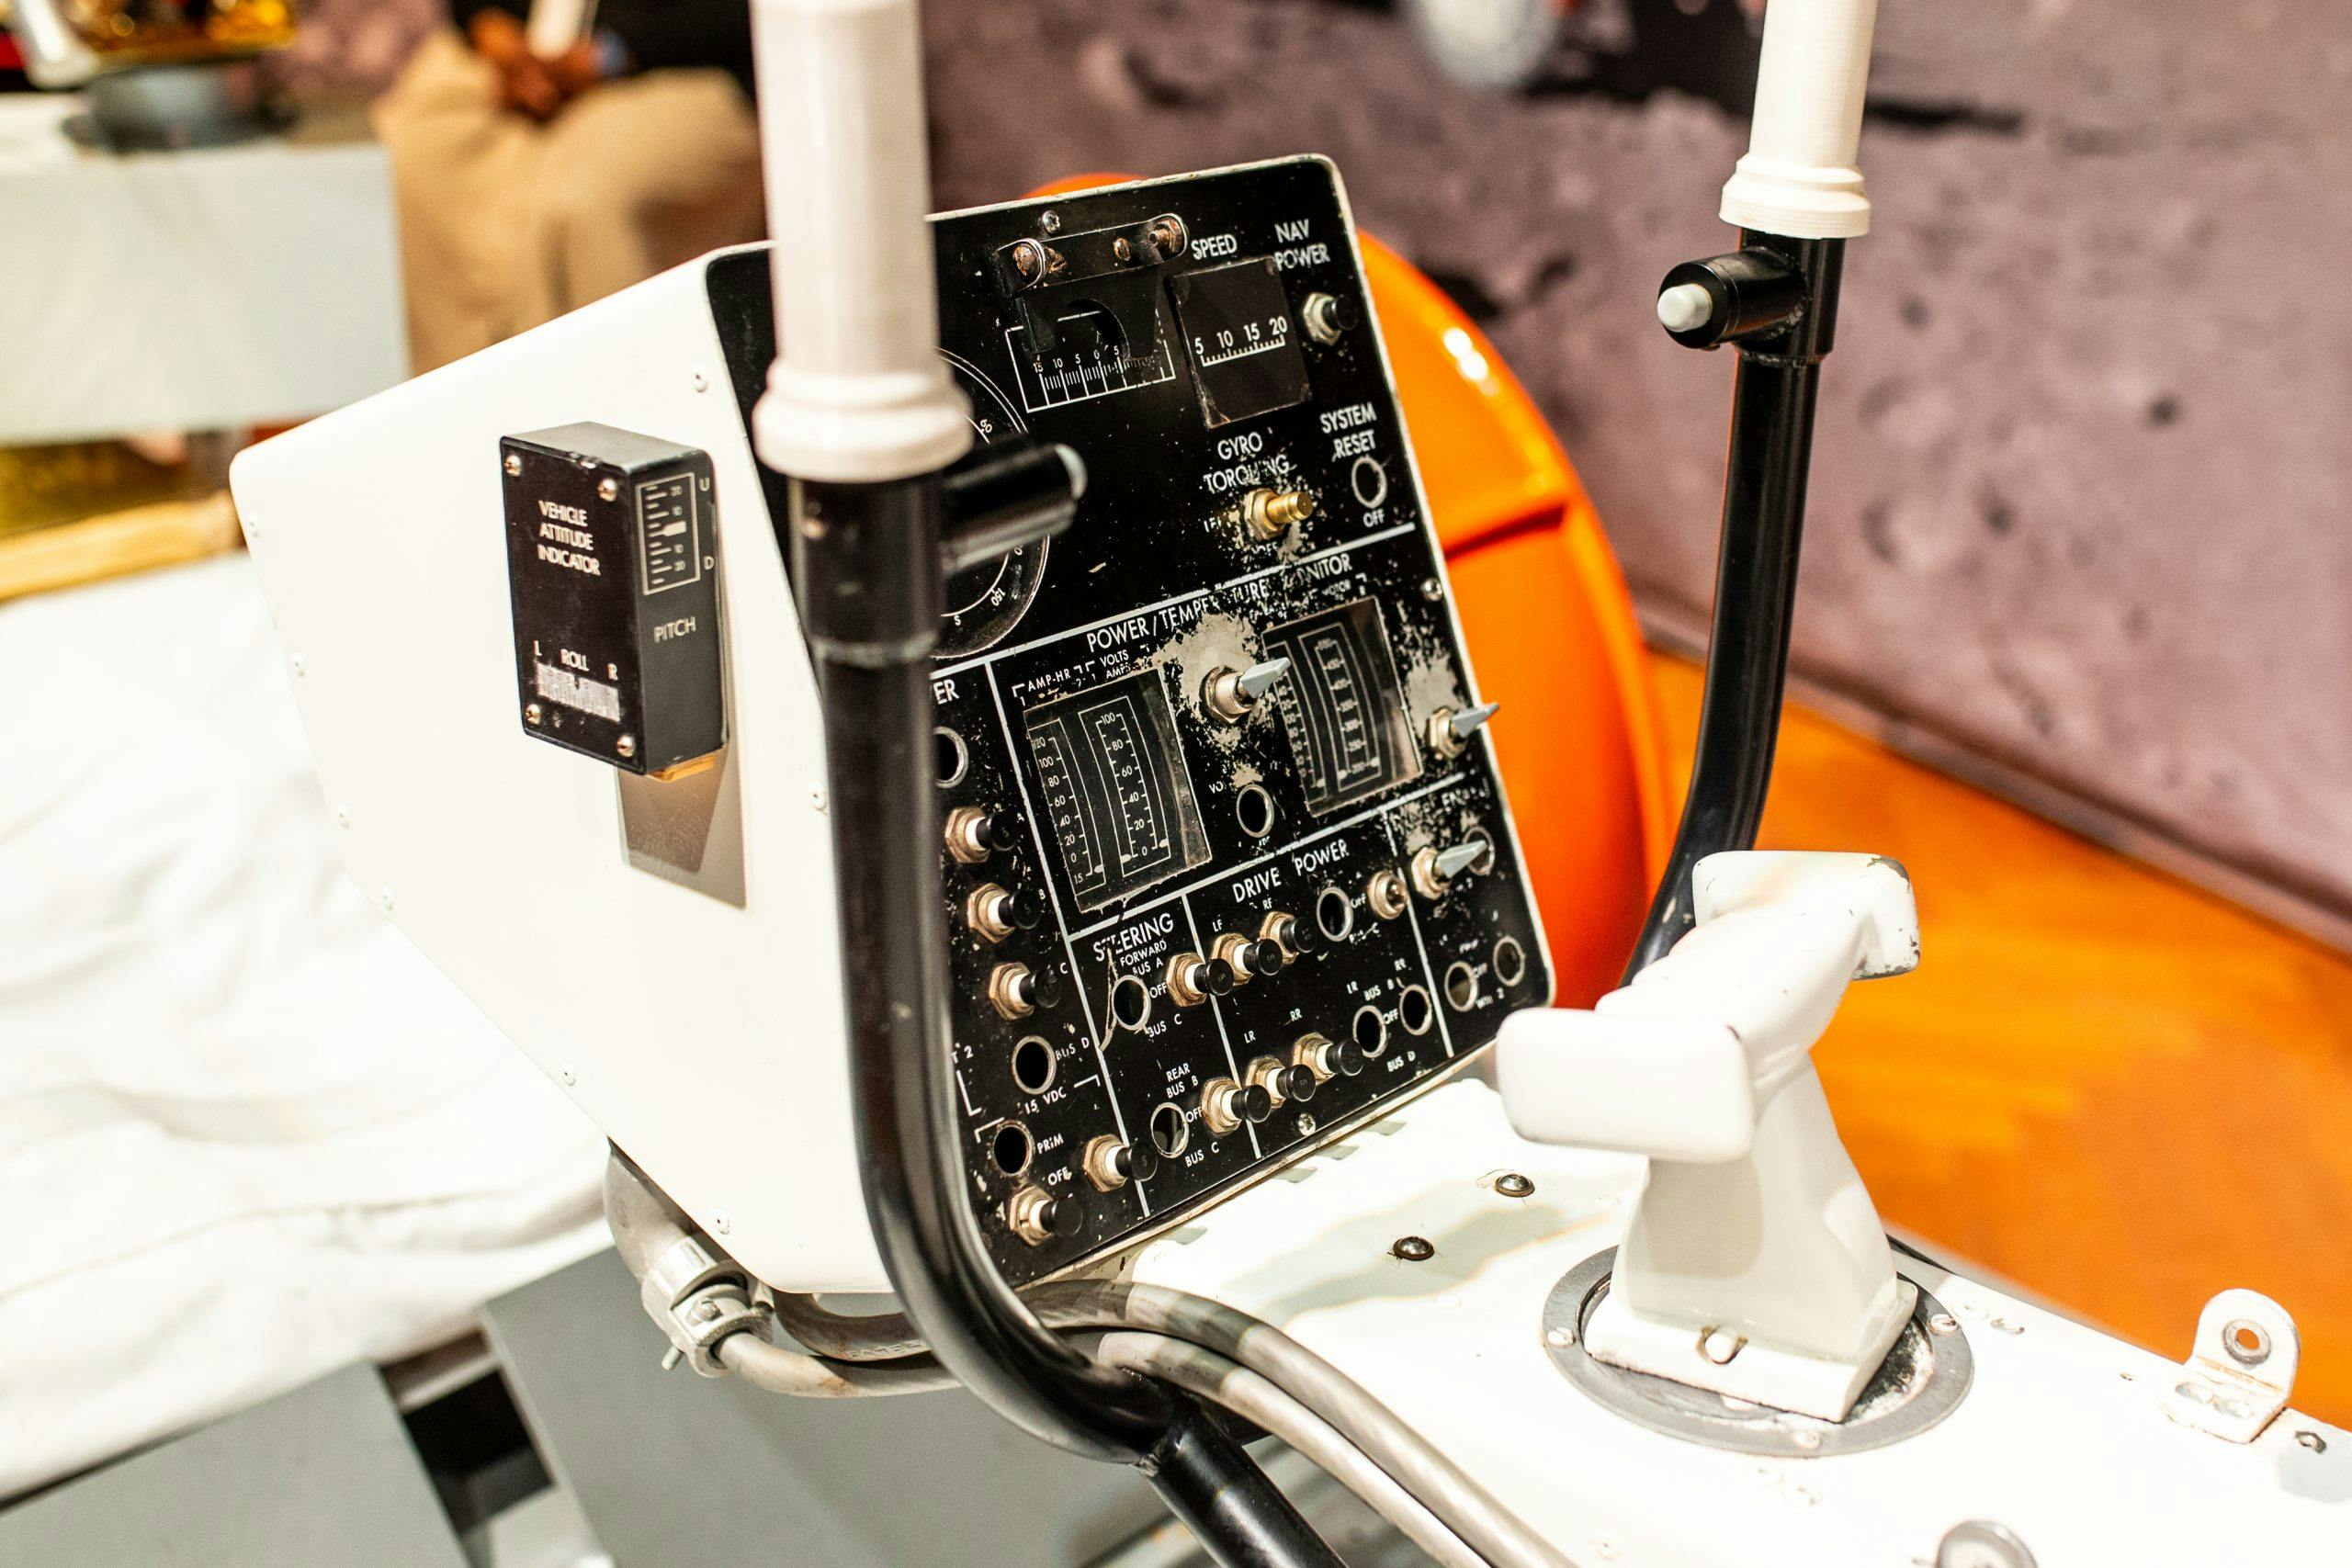 Lunar Rover ray gun control panel